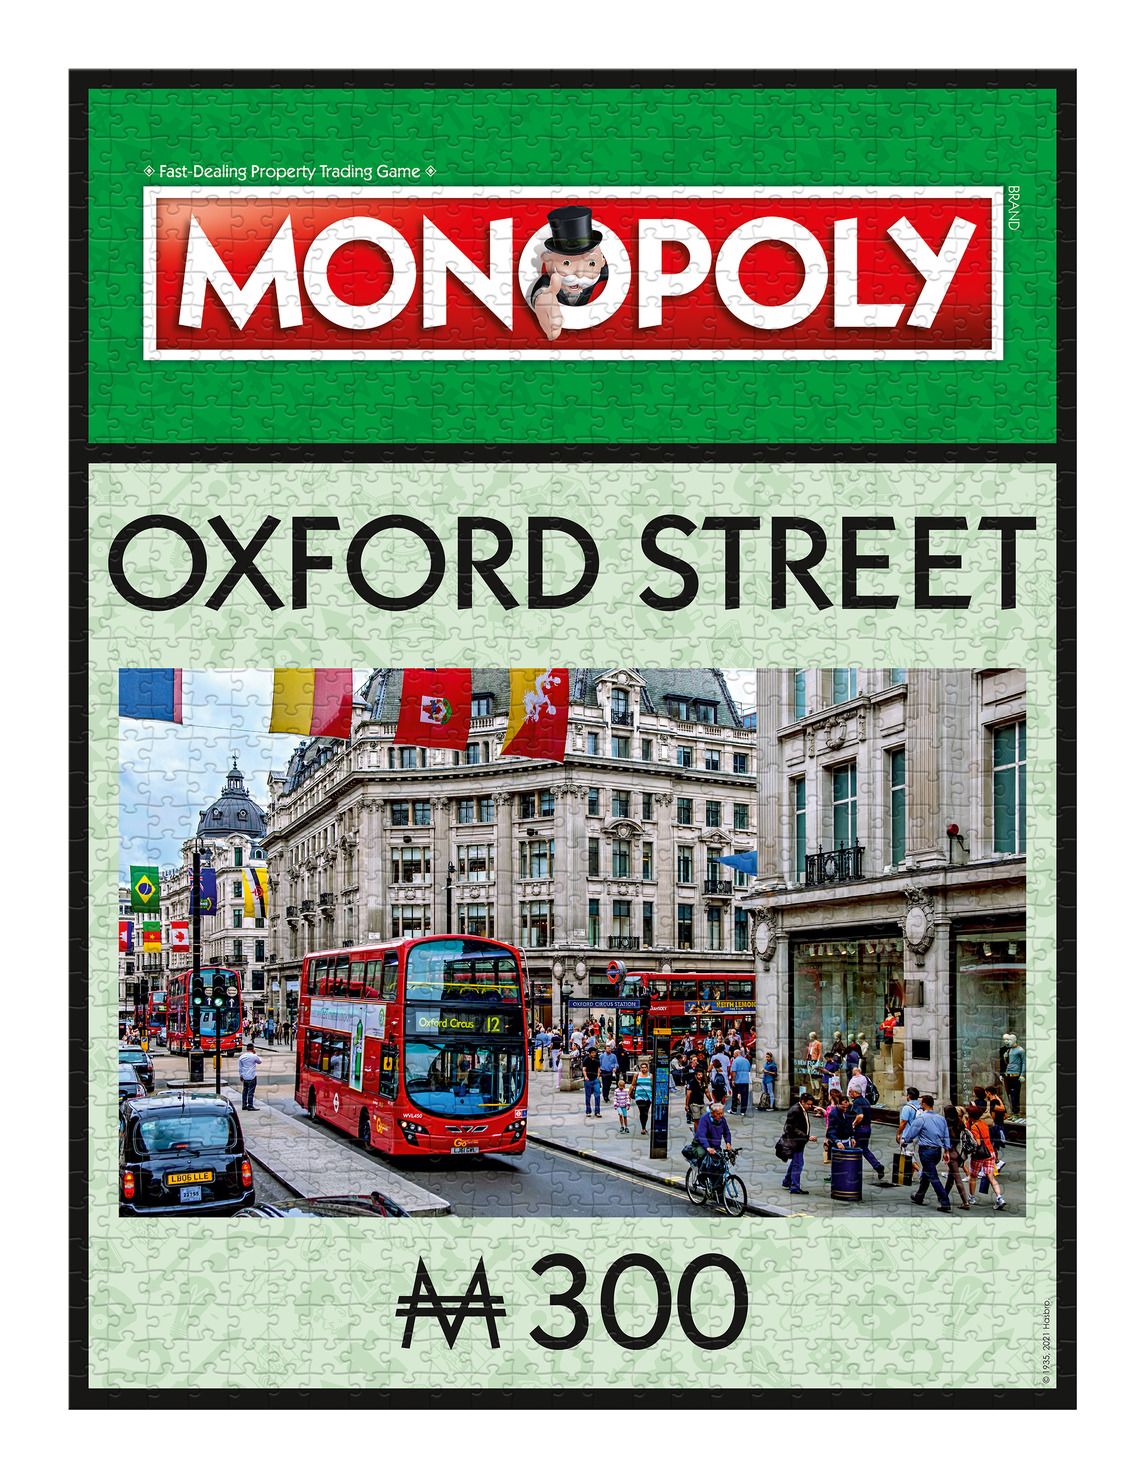 Oxford Street Monopoly - 1000 Piece Jigsaw Puzzle